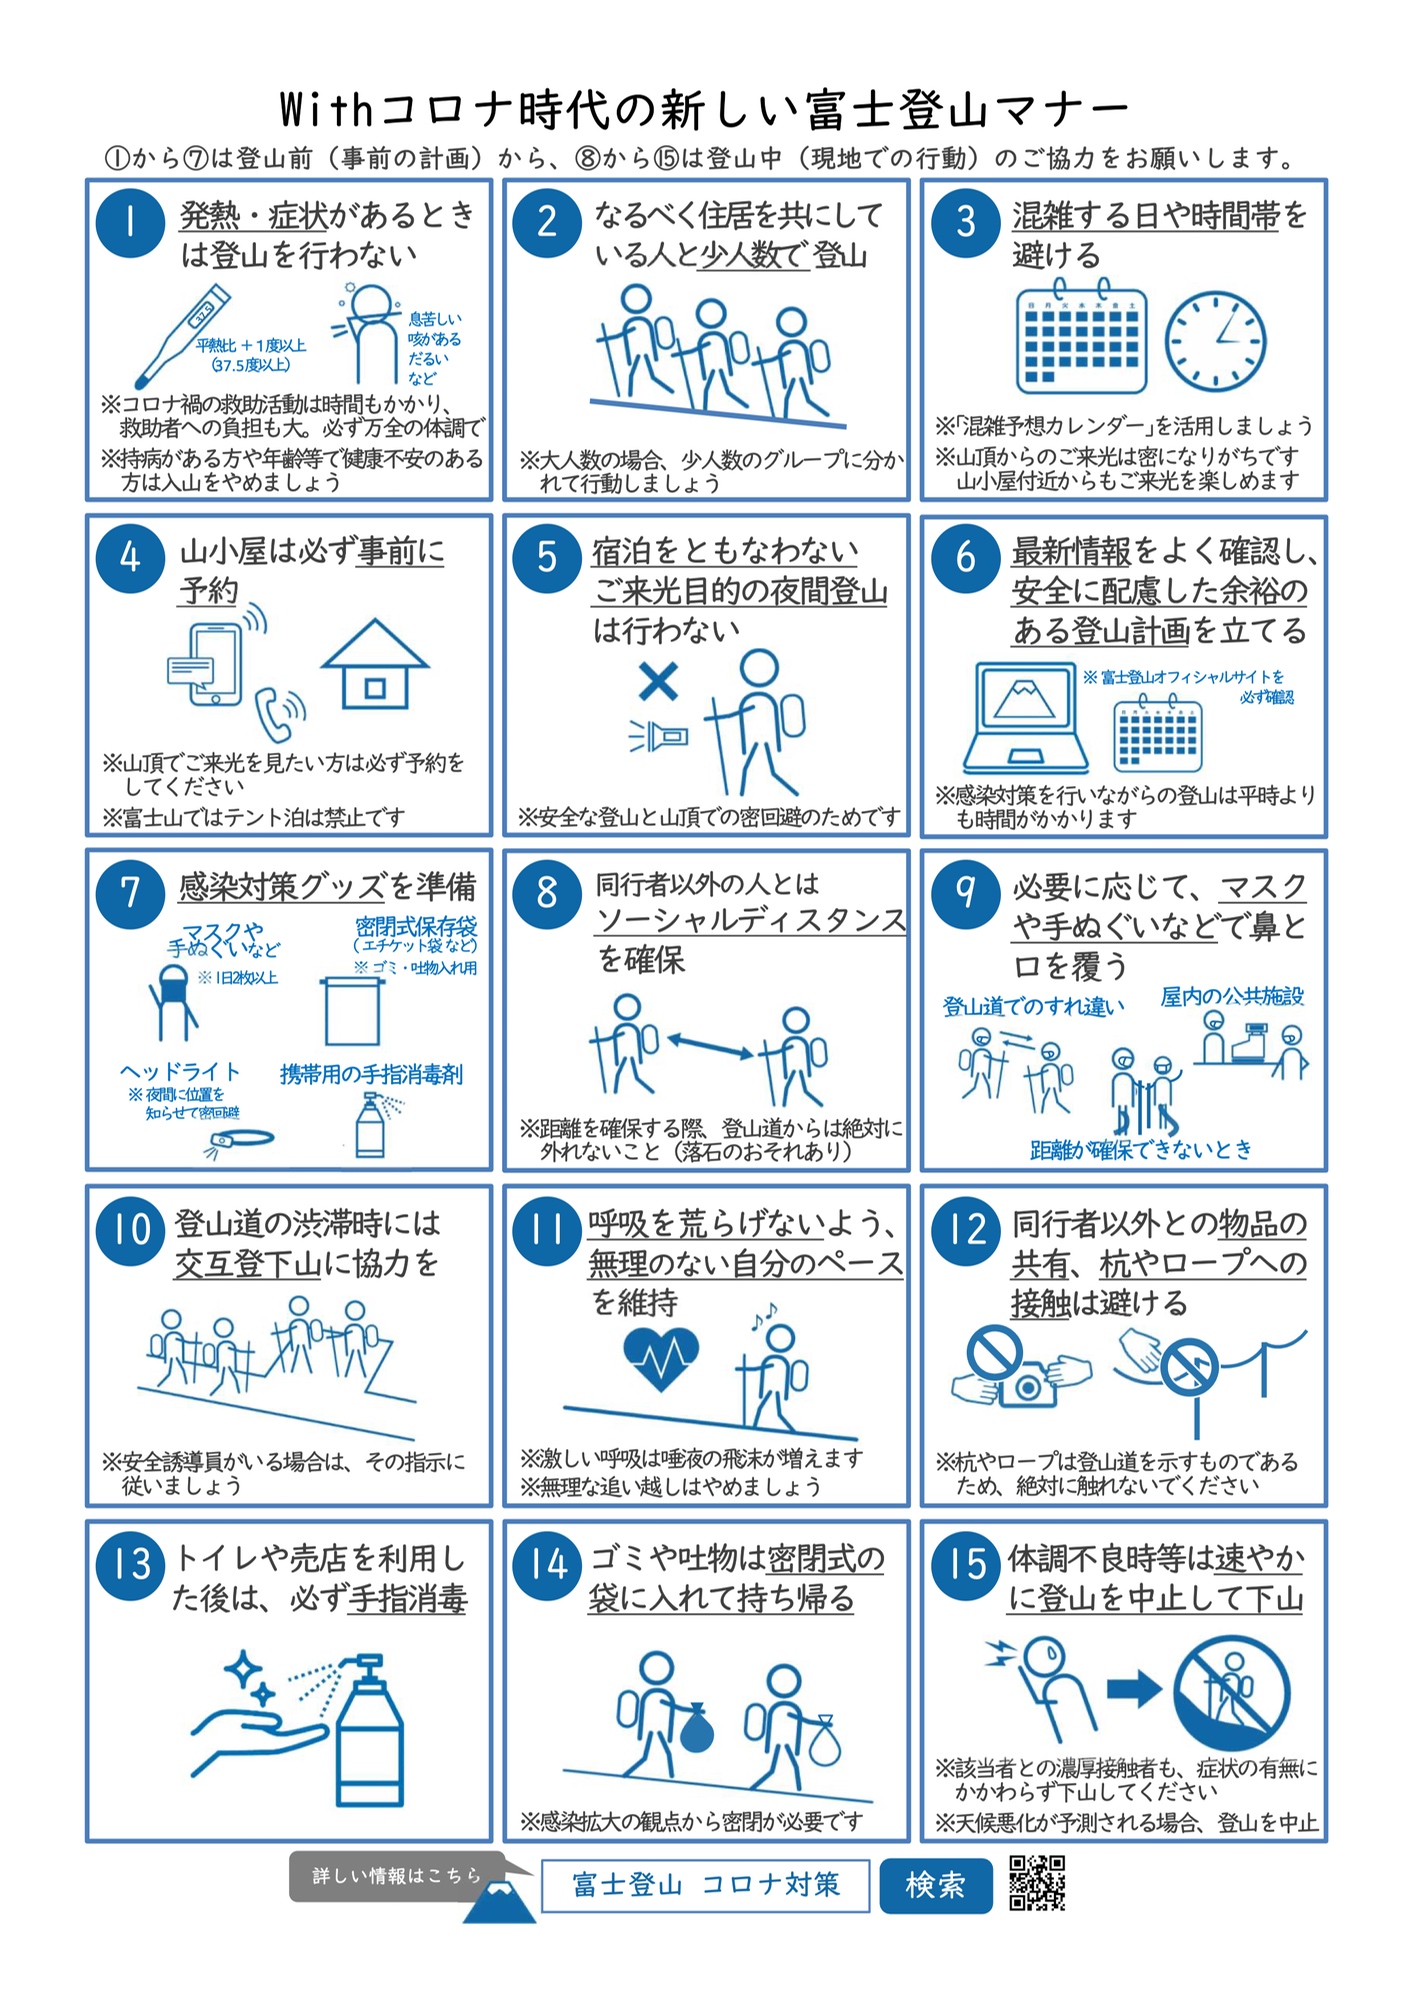 Die 15 Verhaltensregeln für die Fuji-Besteigung in Corona-Zeiten.